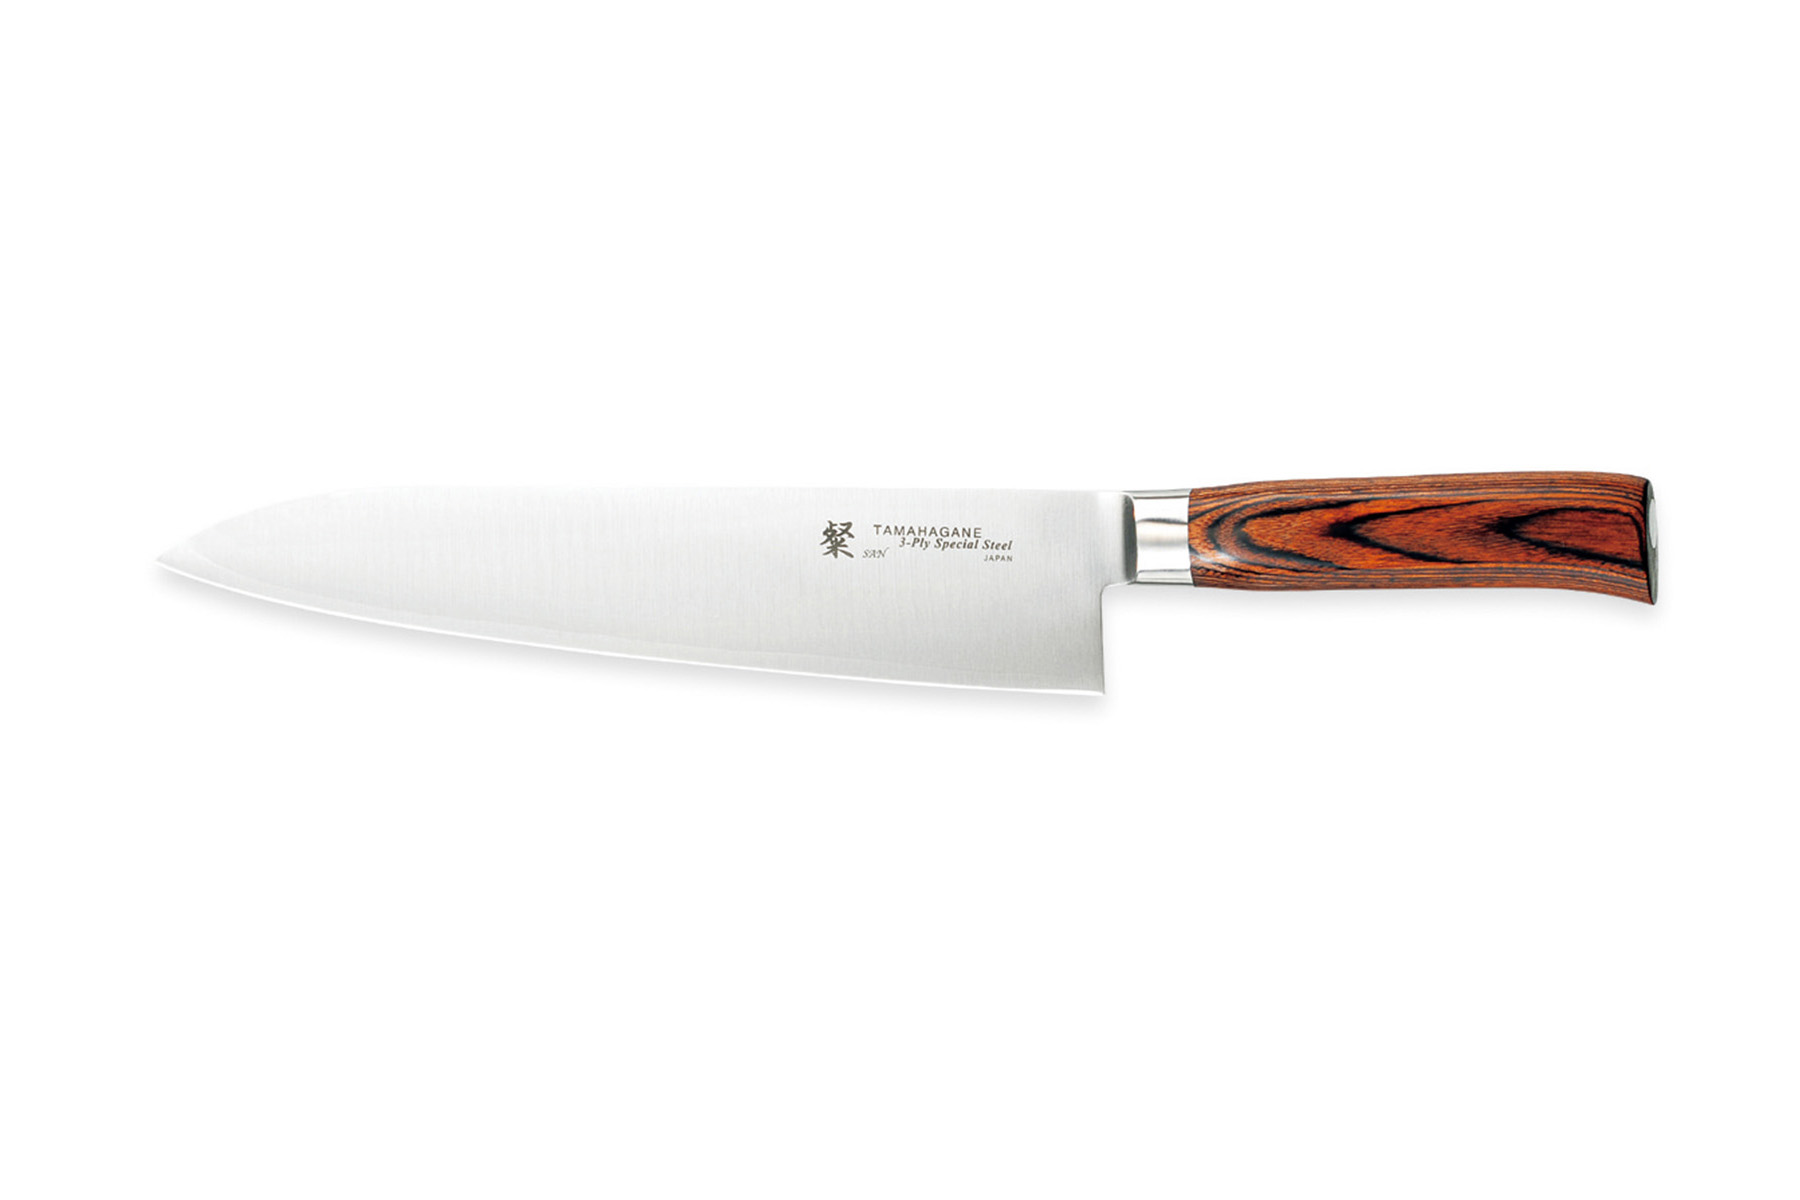 Couteau japonais Tamahagane San - Couteau de chef 24 cm